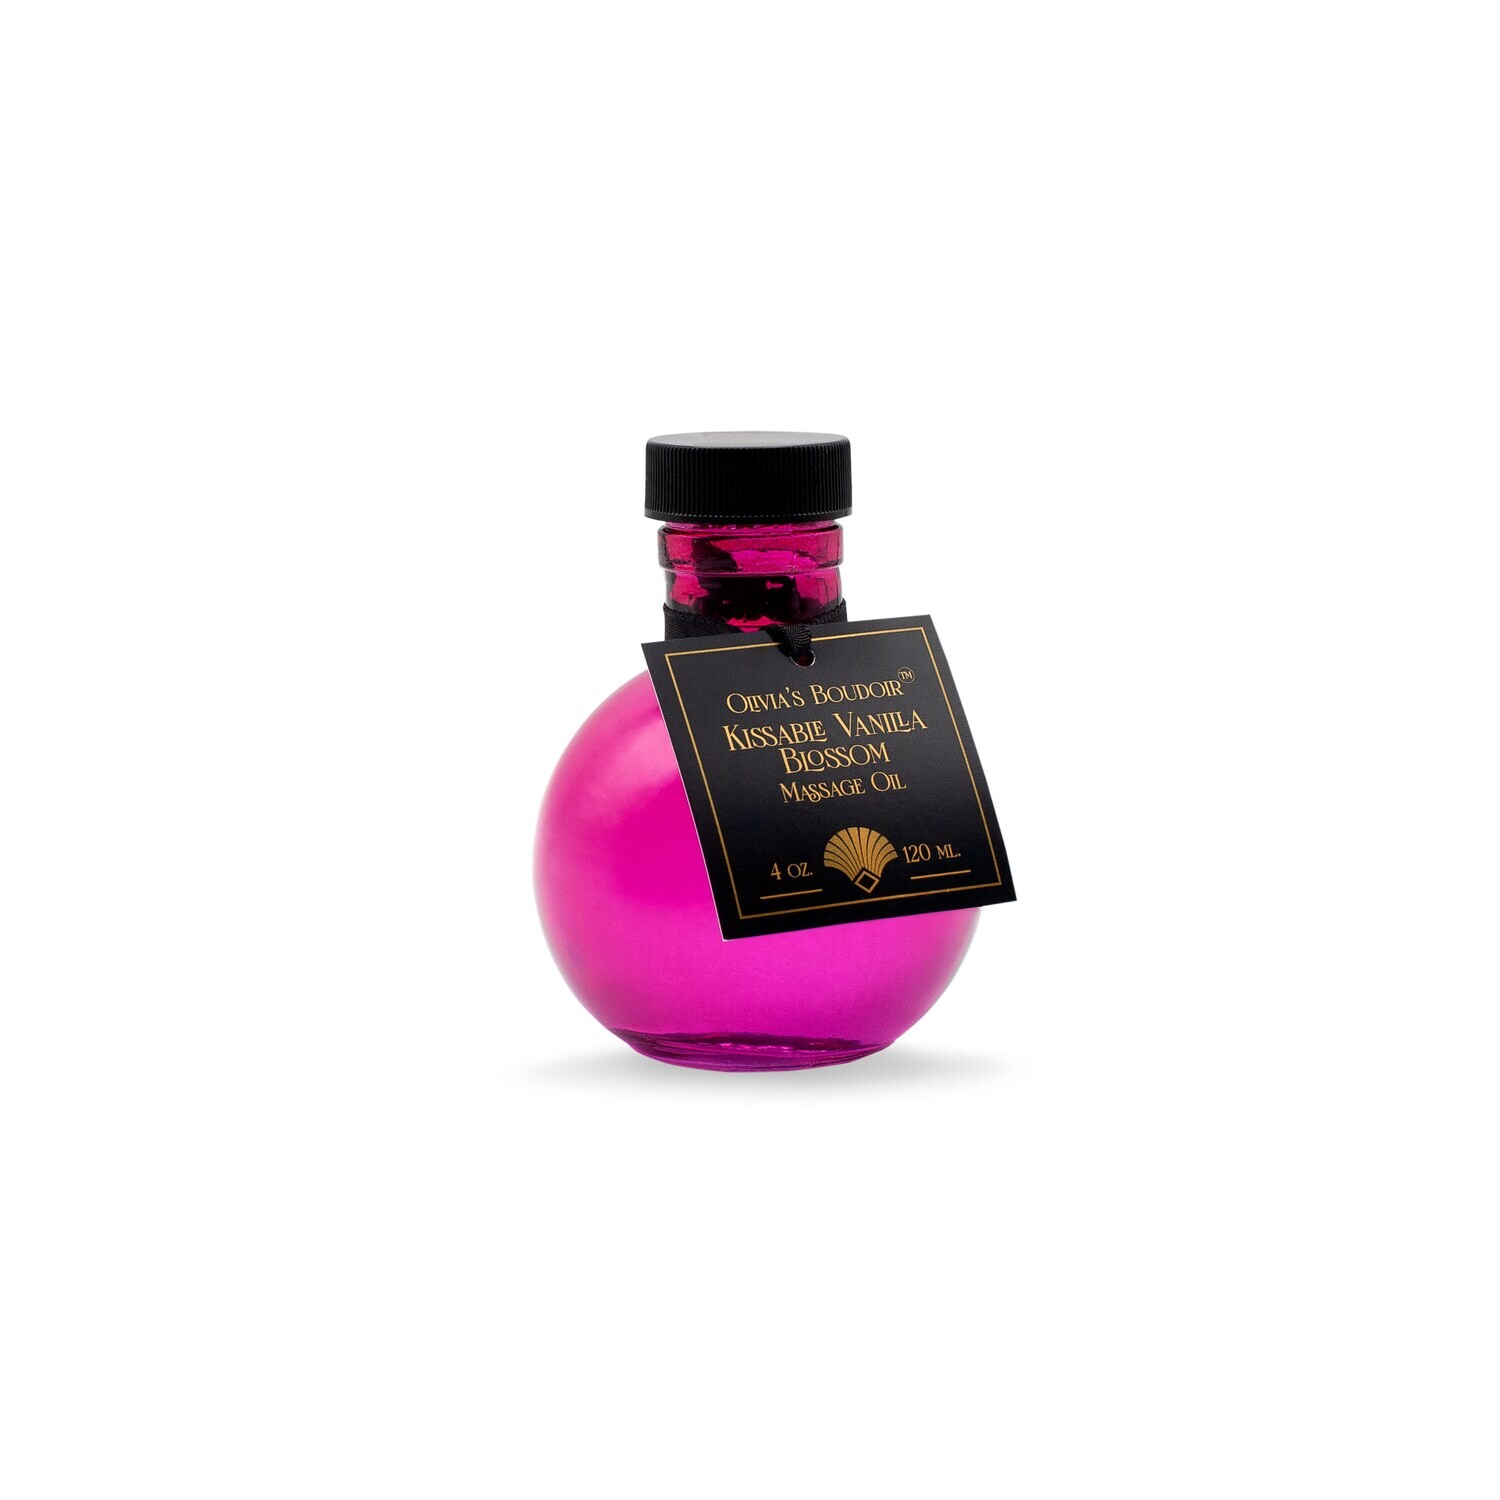 Kissable Vanillia Blossom Massage Oil